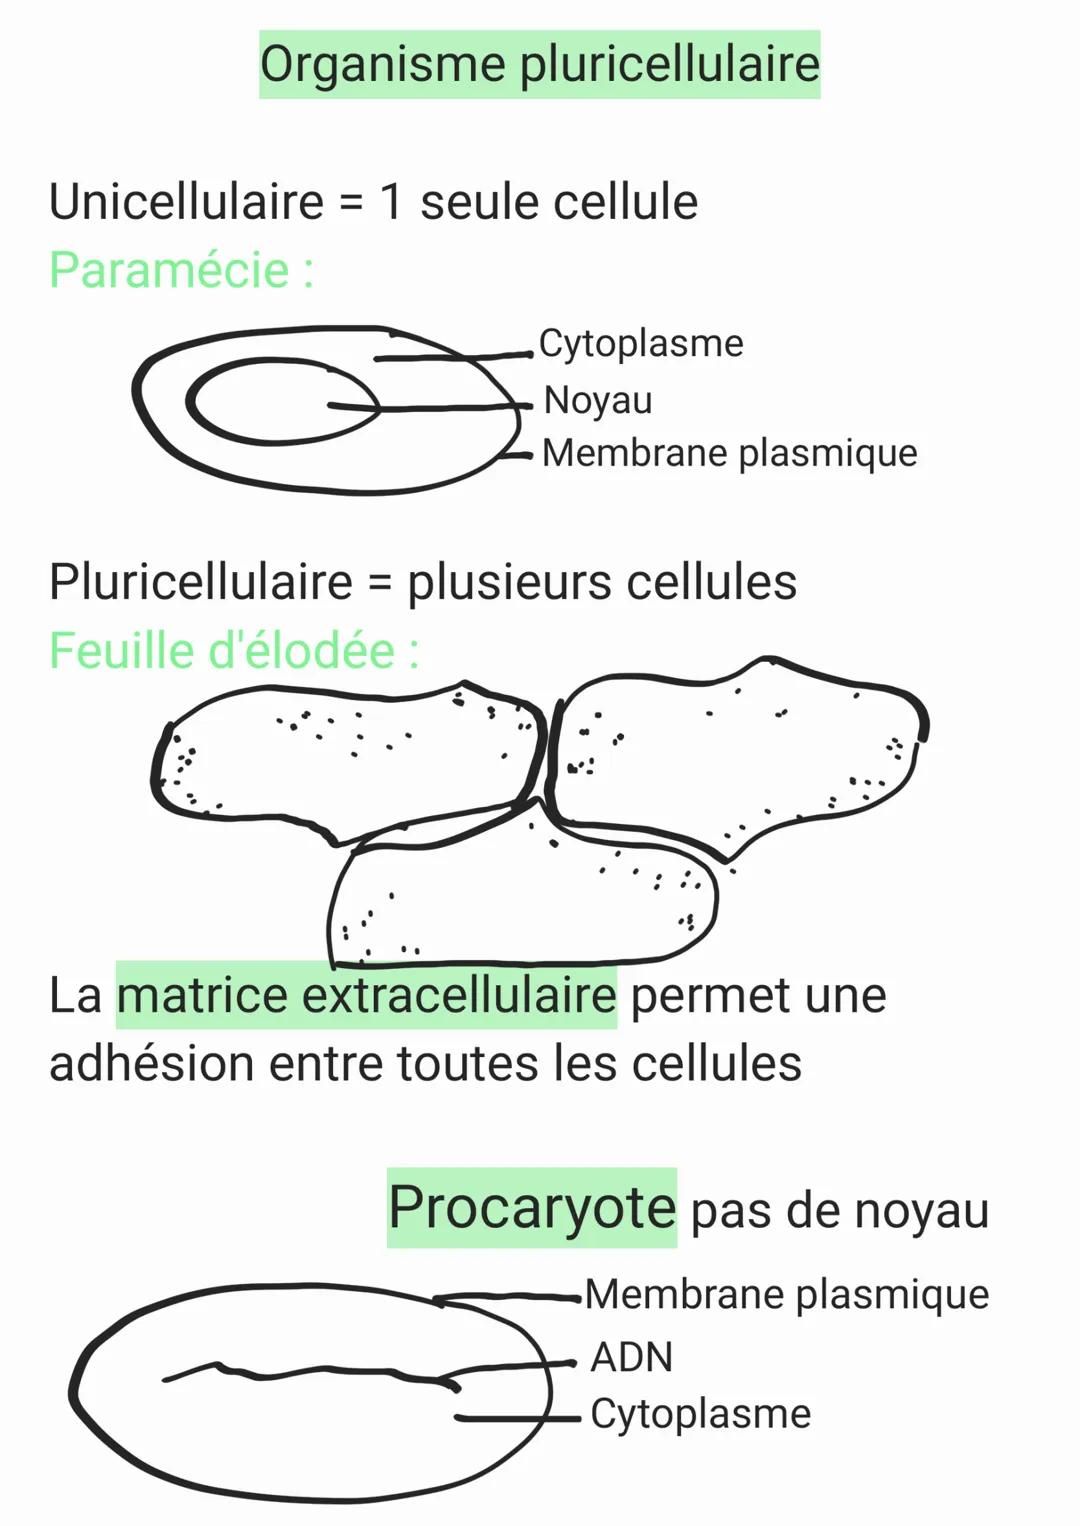 Unicellulaire = 1 seule cellule
cyraplasme
Chap 2
Organisme pluricellulaire
Paramécie
∙nayan
•membrane plasmique
Pluricellulaire = Plusieurs